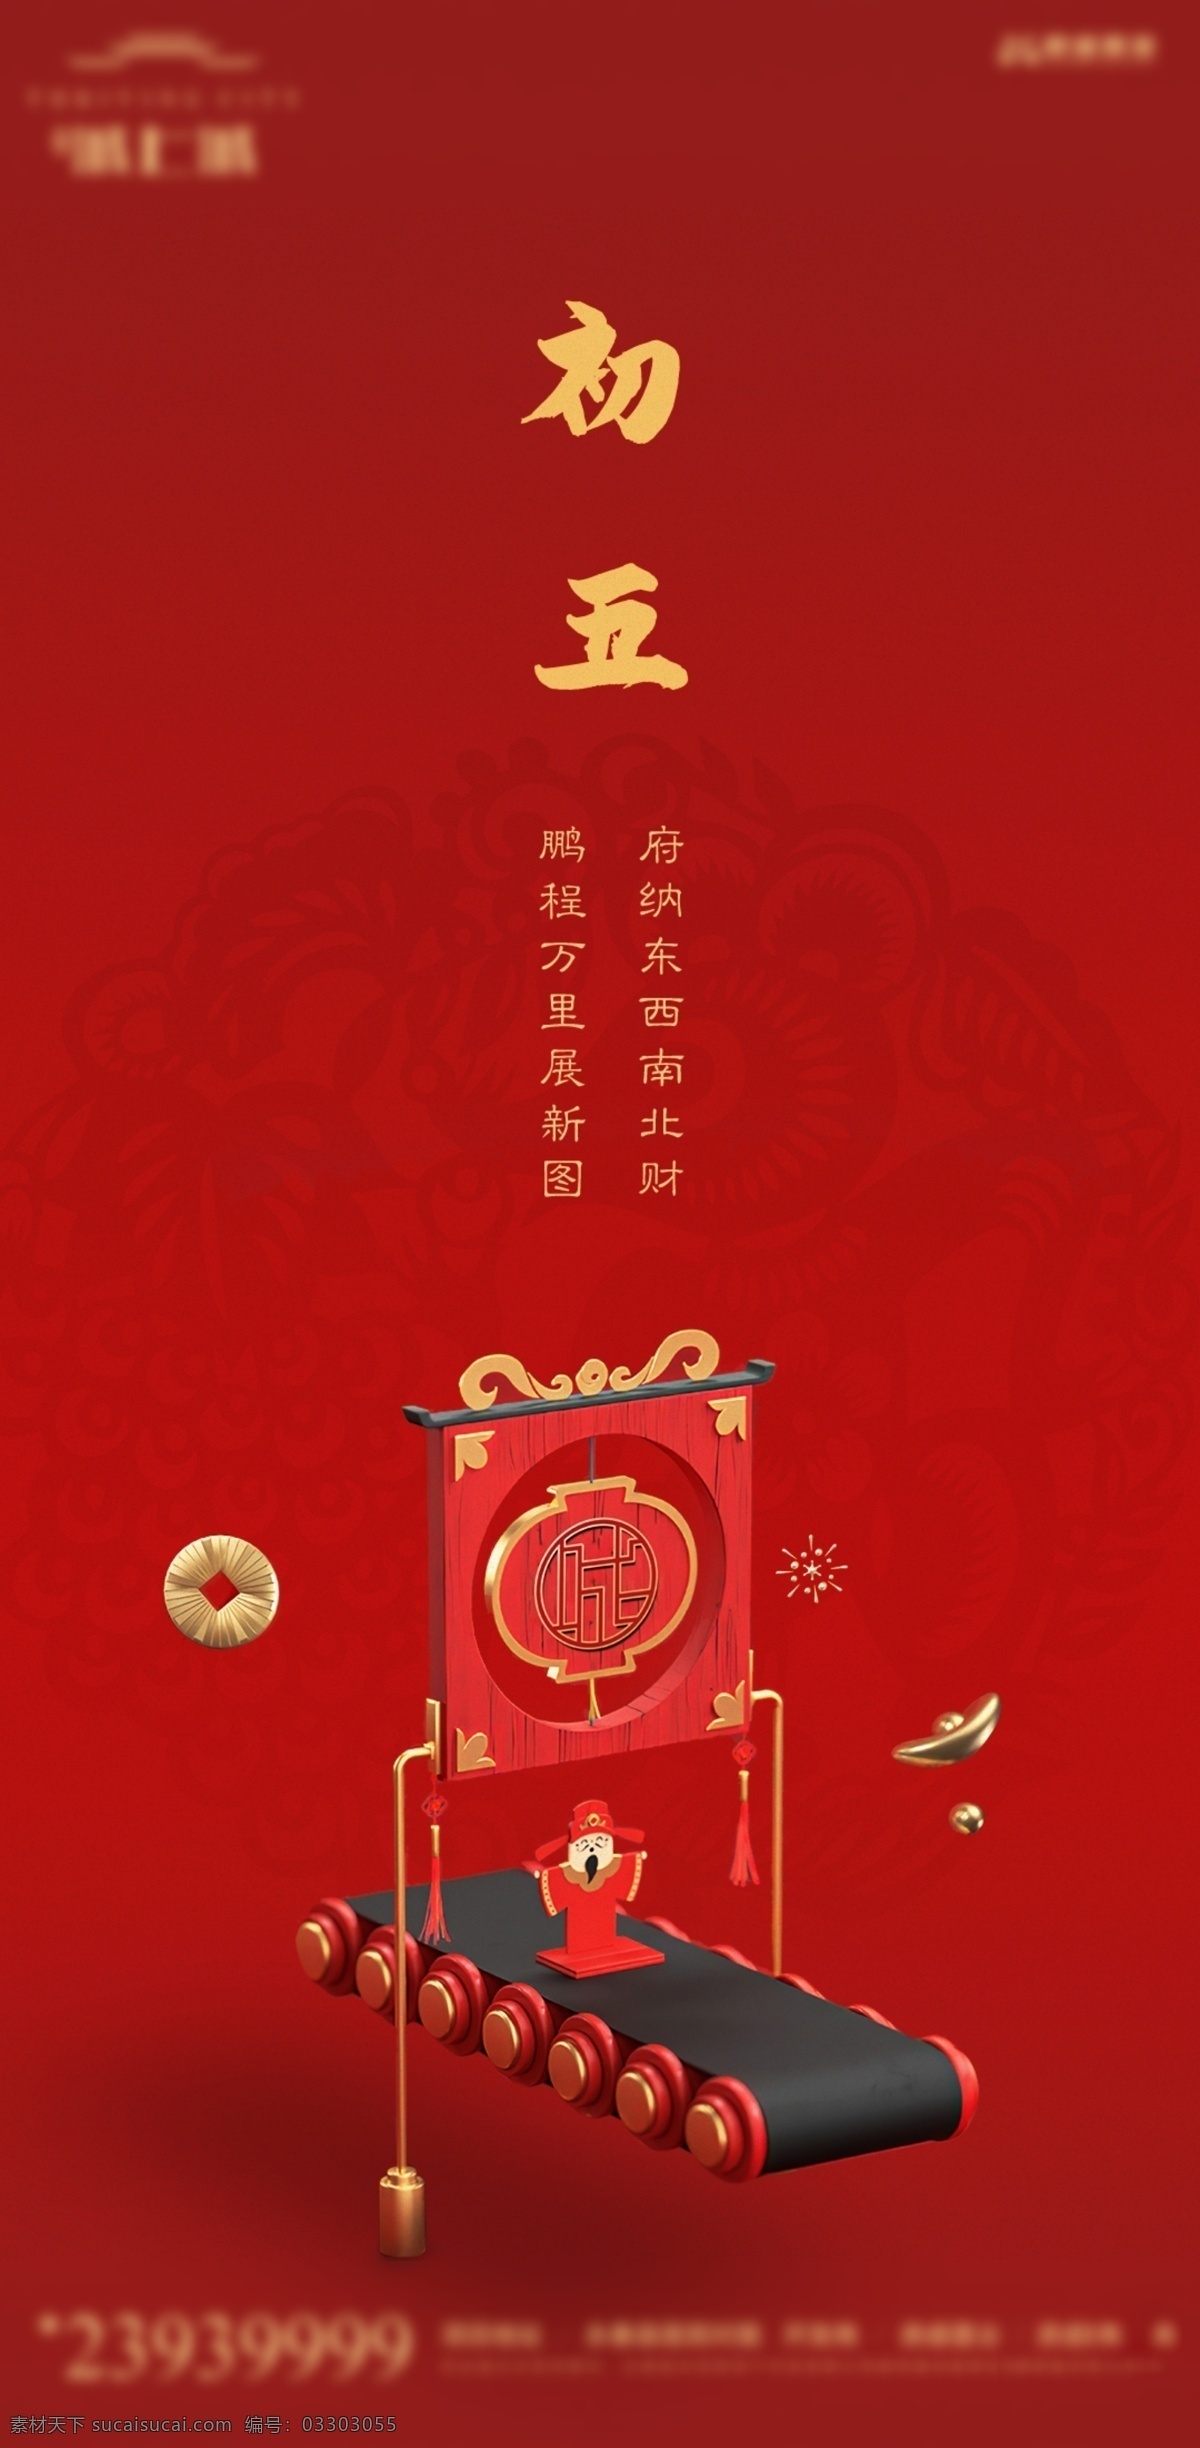 春节系列 初五 春节 新年 红色背景 大年初五 节气 分层